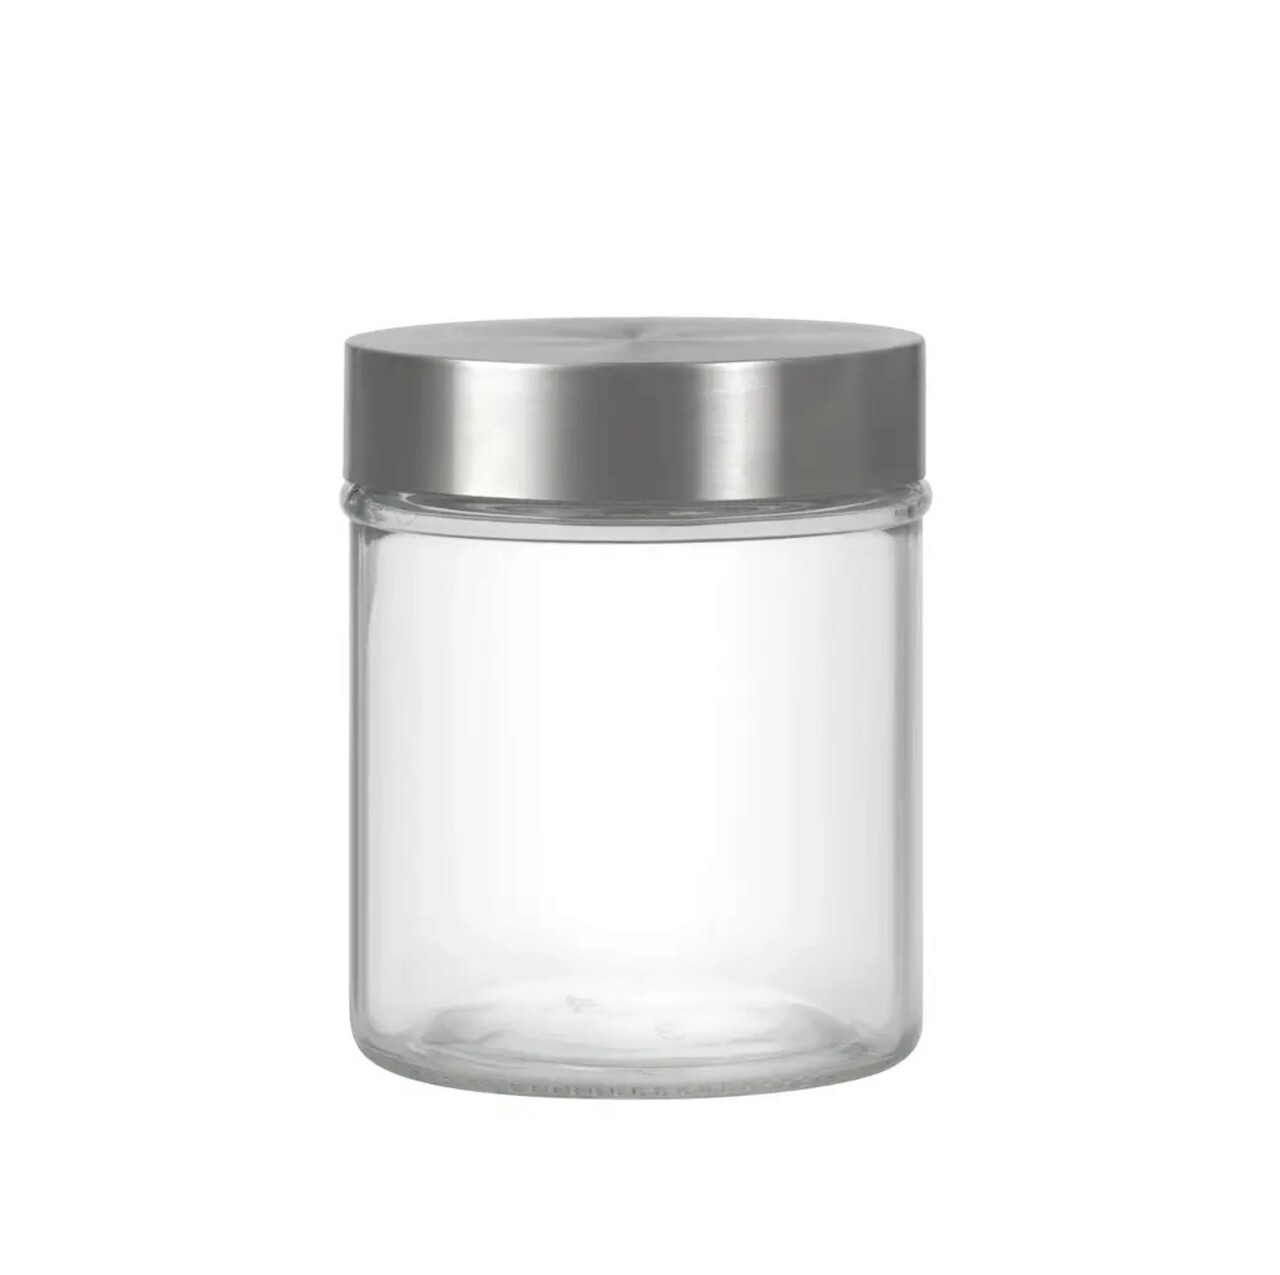 Recipient cu capac Milos Round, Domotti, 9.8 x 12.3 cm, 700 ml, sticla/inox, transparent/argintiu